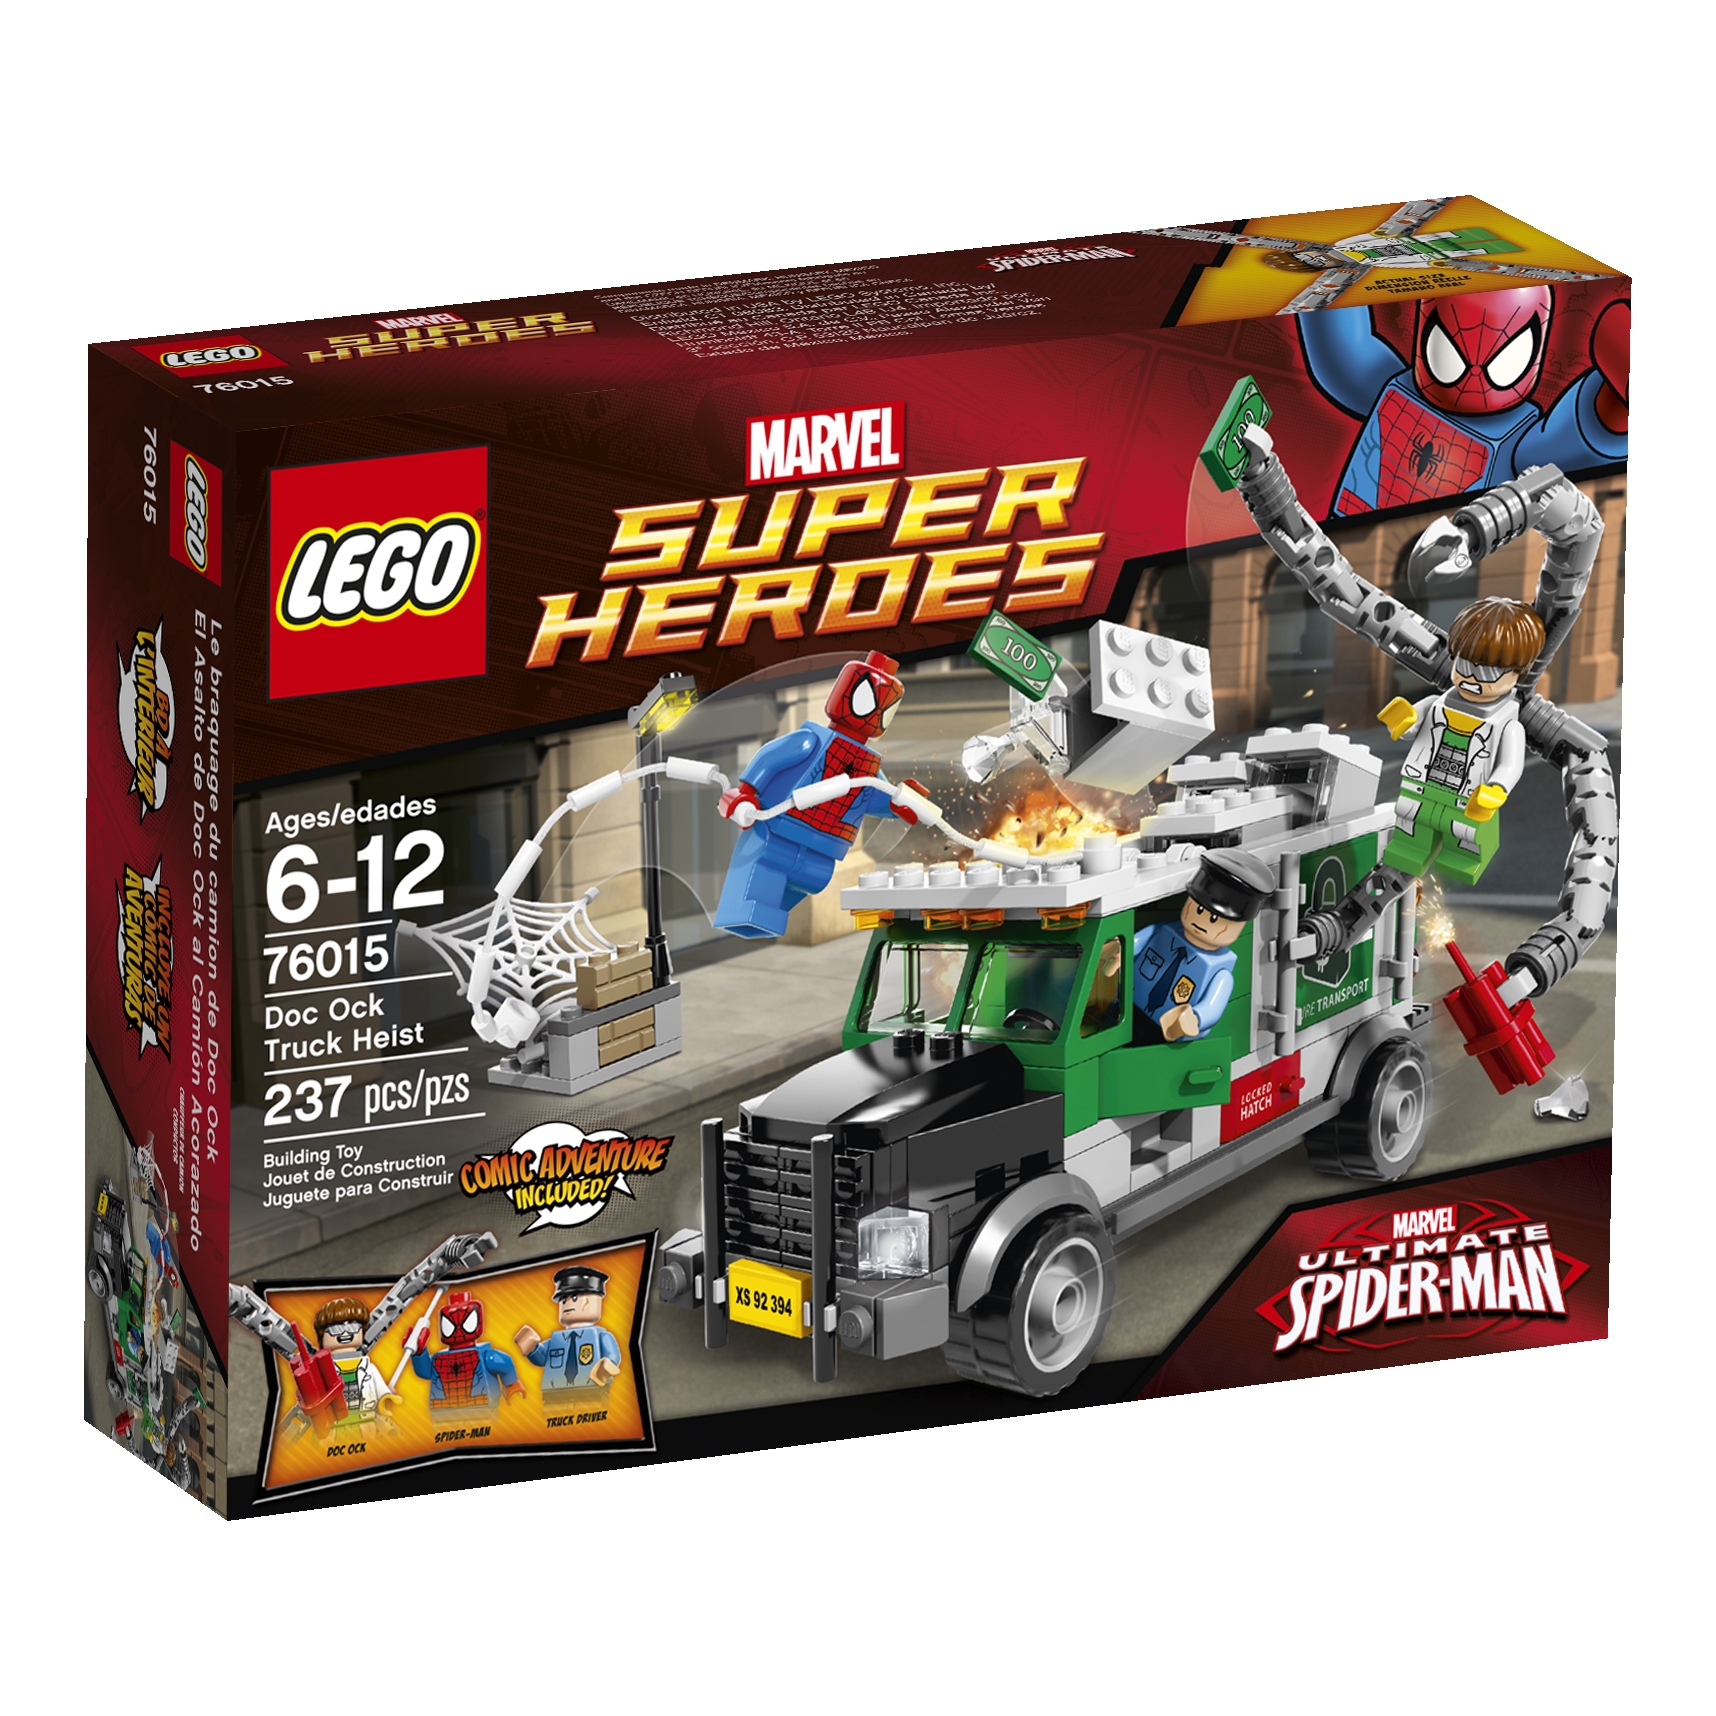 LEGO Marvel Super Hero Sets For 2014 Revealed - FBTB